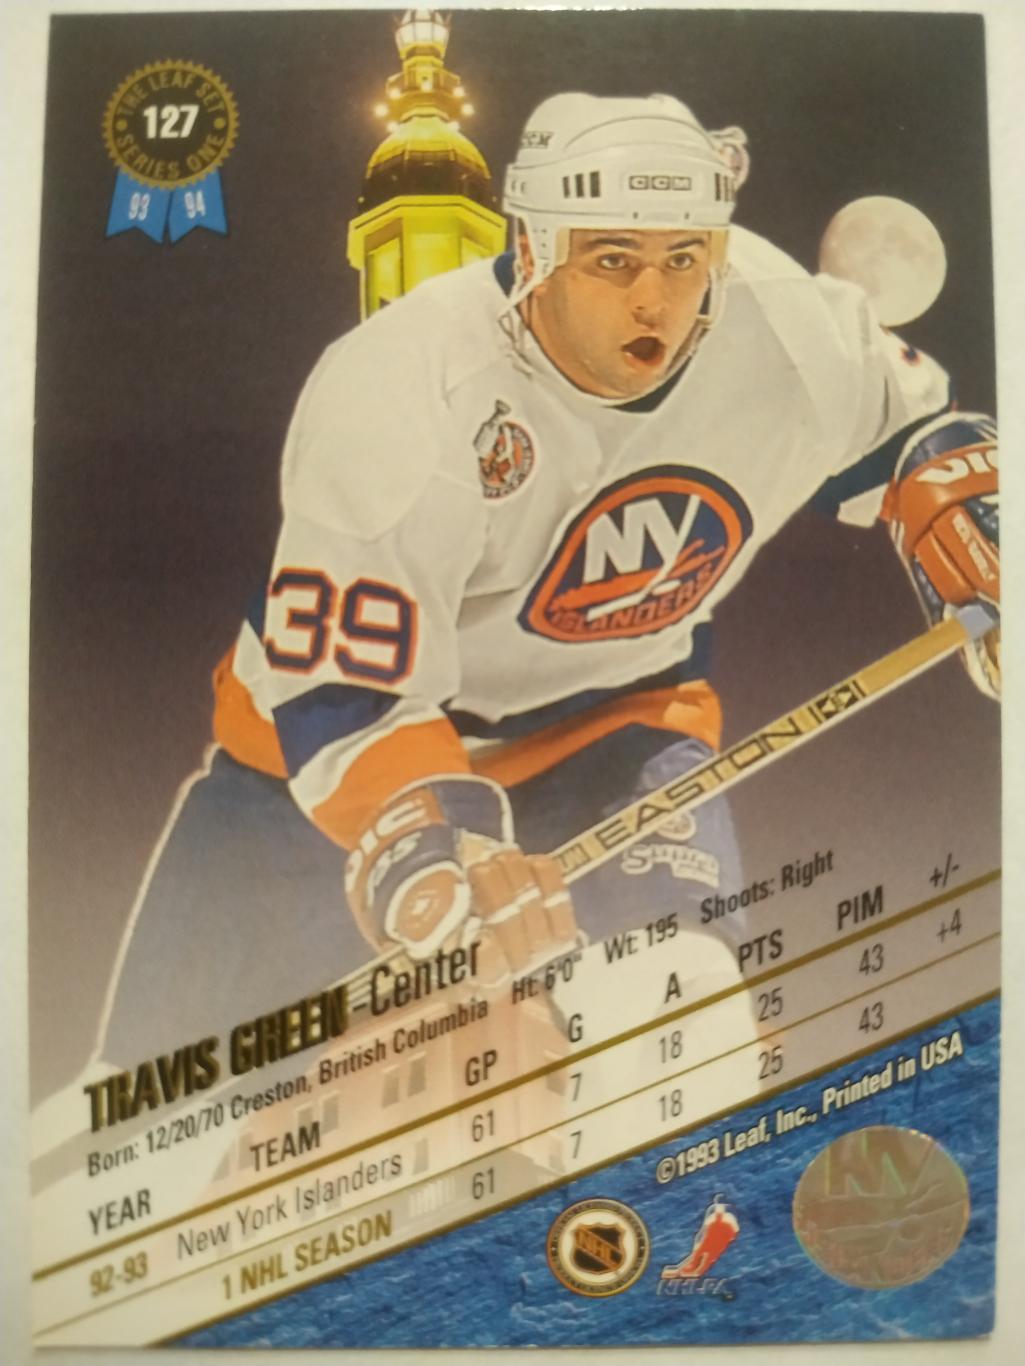 ХОККЕЙ КАРТОЧКА НХЛ LEAF SET SERIES ONE 1993-94 TRAVIS GREEN ISLANDERS #127 1